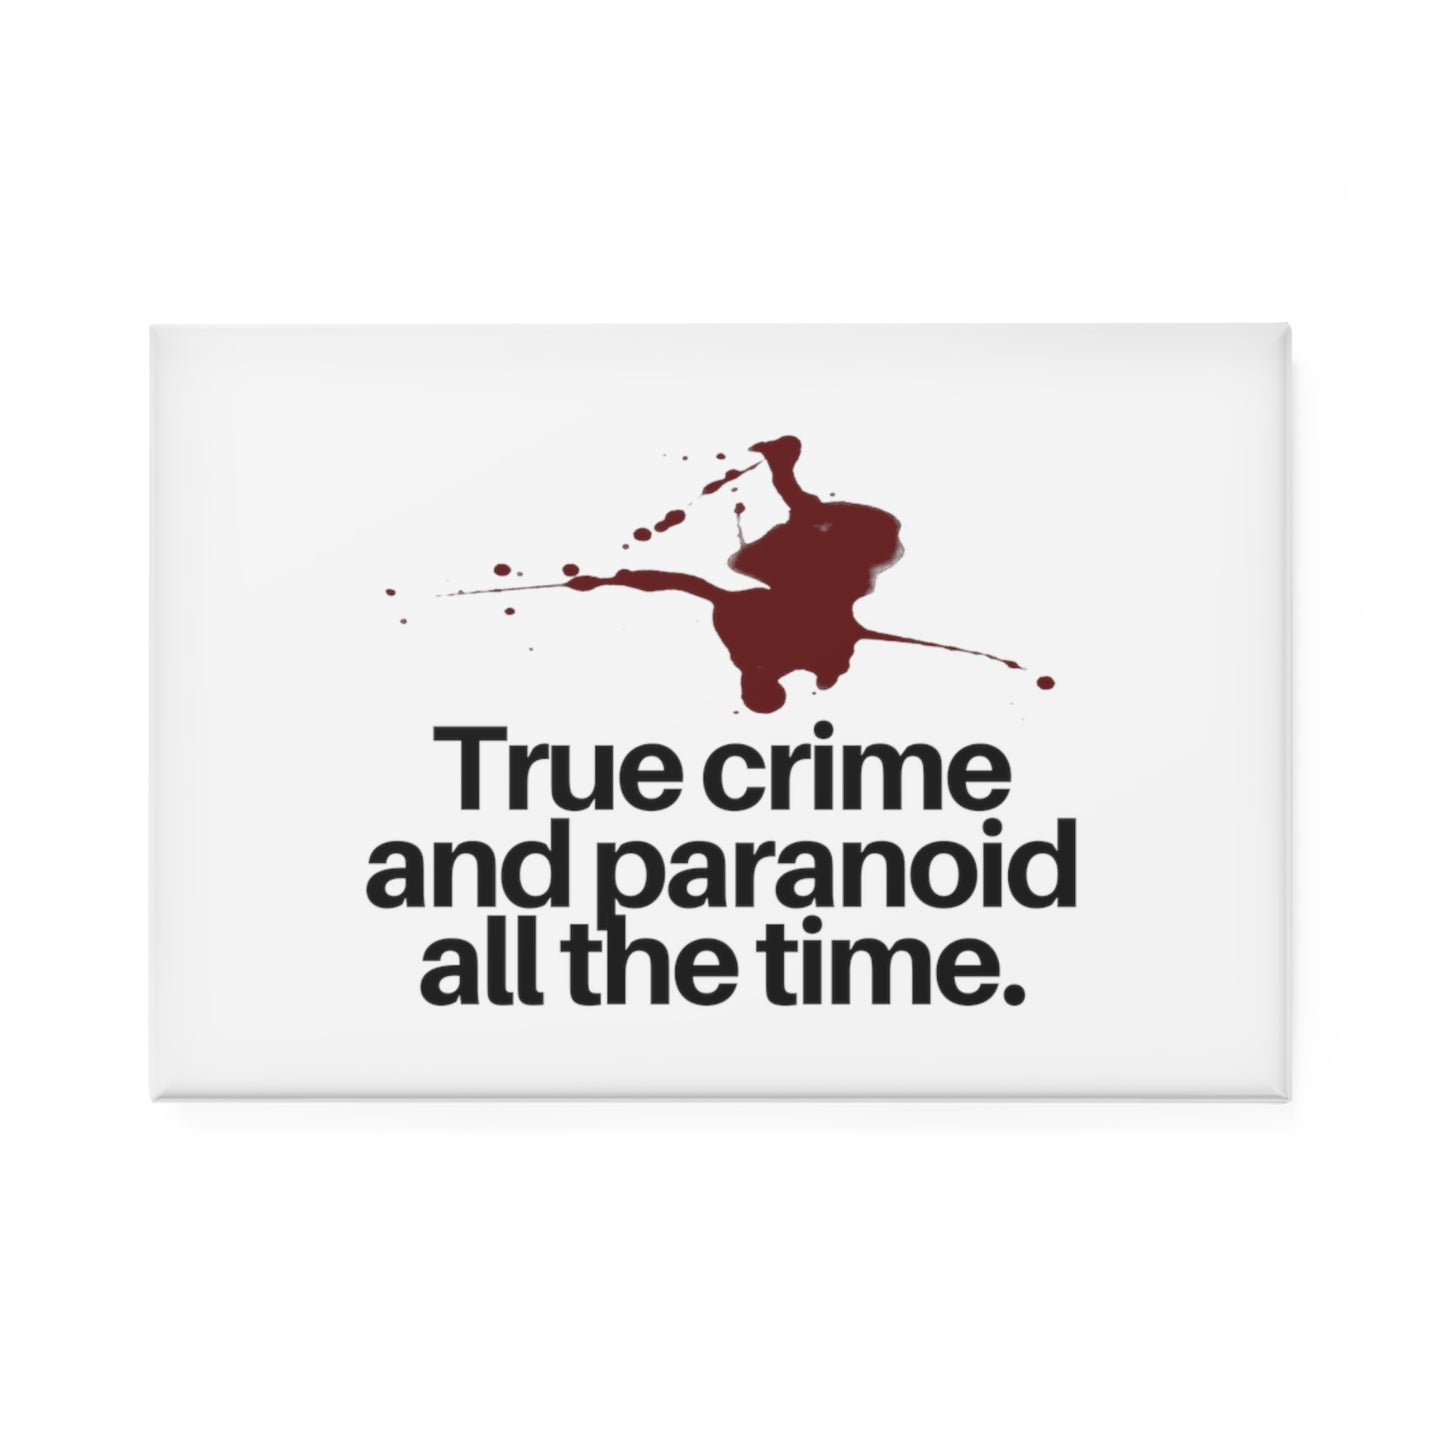 Dateline, Keith Morrison, Dateline Lover, Funny Crime Show, Crime Lover, Serial Killer, True Crime, Magnet